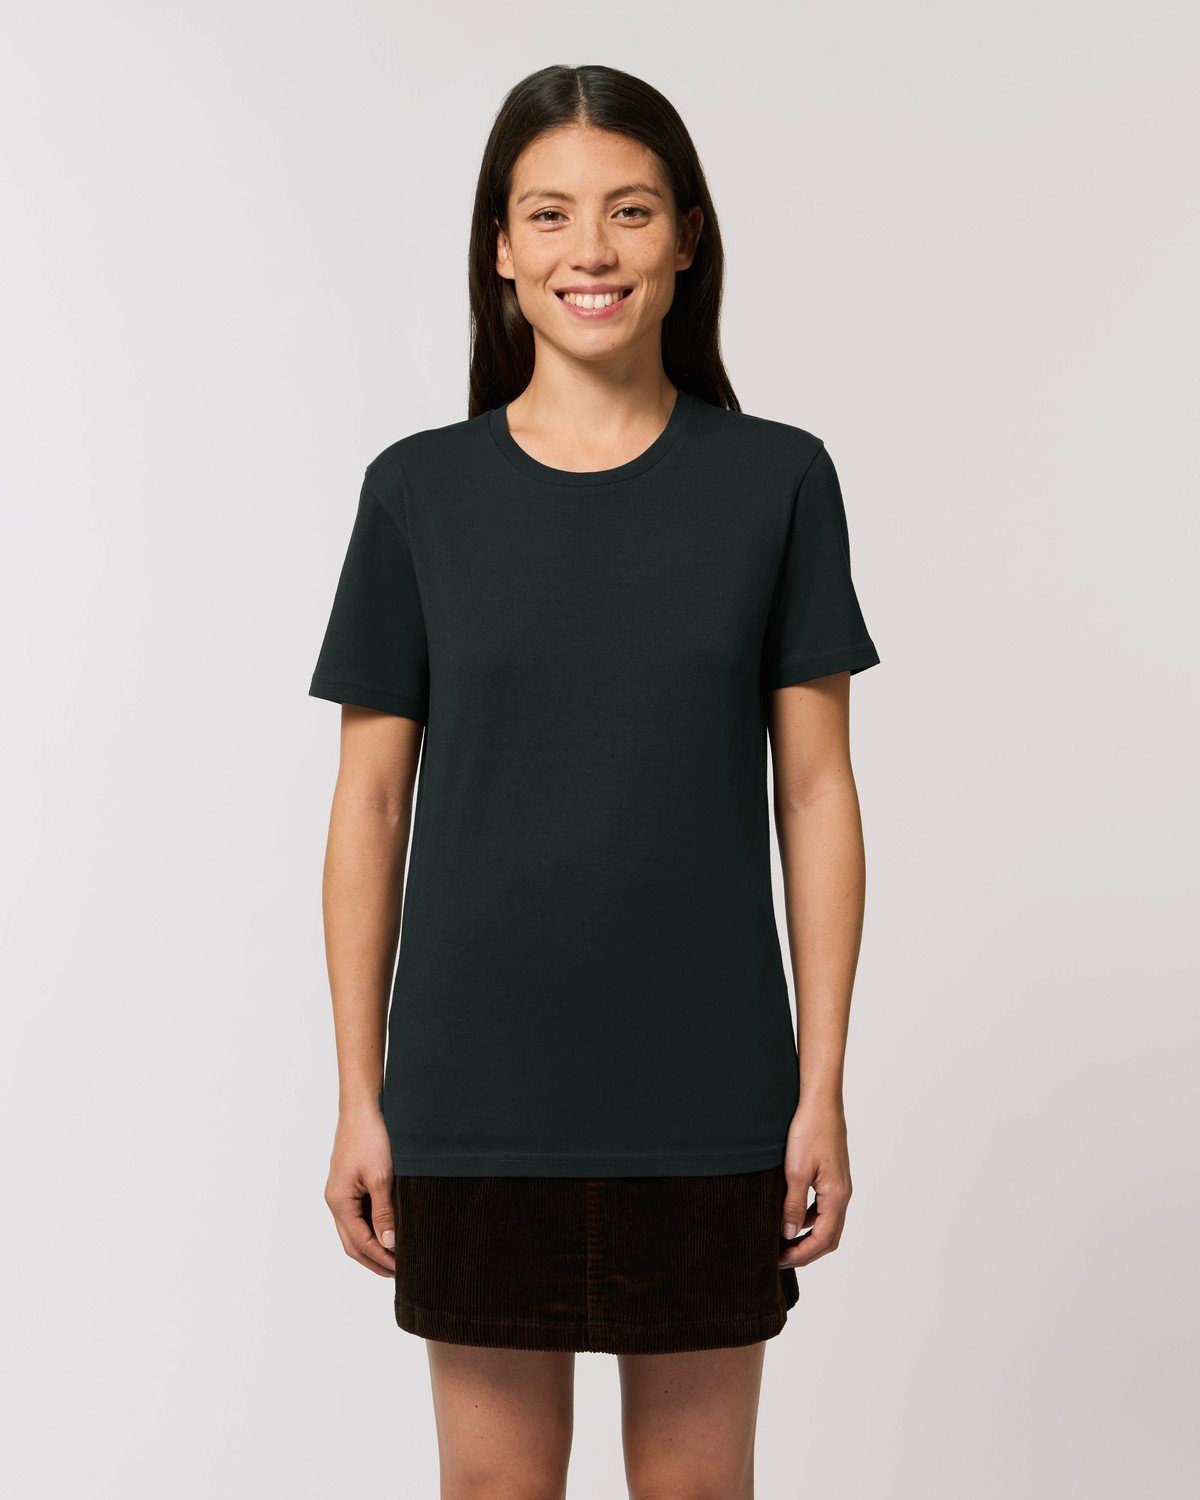 Hilltop 100% Unisex Black Bio-Baumwolle Hochwertiges T-Shirt T-Shirt aus